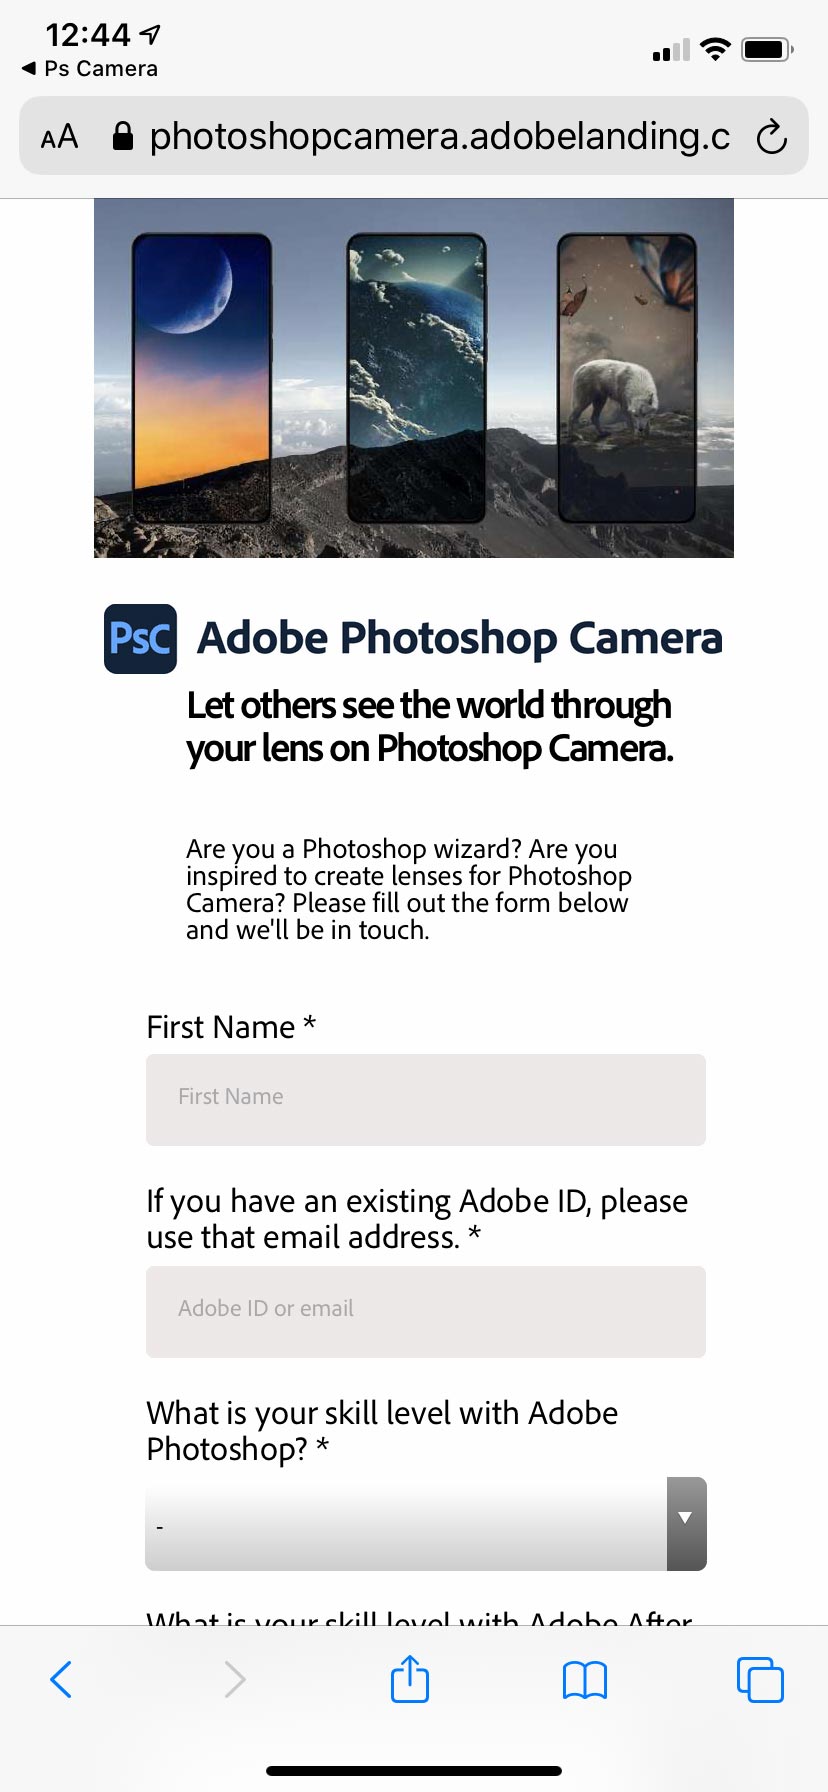 手機攝影特效 App 何其多，問你期待的有幾多個？偏偏有 App 由宣布到推出叫人等足半年，卻依然願意等。那是理所當然的，Adobe 推出攝影 App，怎不會成為話題？這個 Photoshop Camera，其實也不算驚天動地，某程度上只是集百家之大成，但有 Photoshop 的修圖技術加持，總覺得張相是靚啲啲。